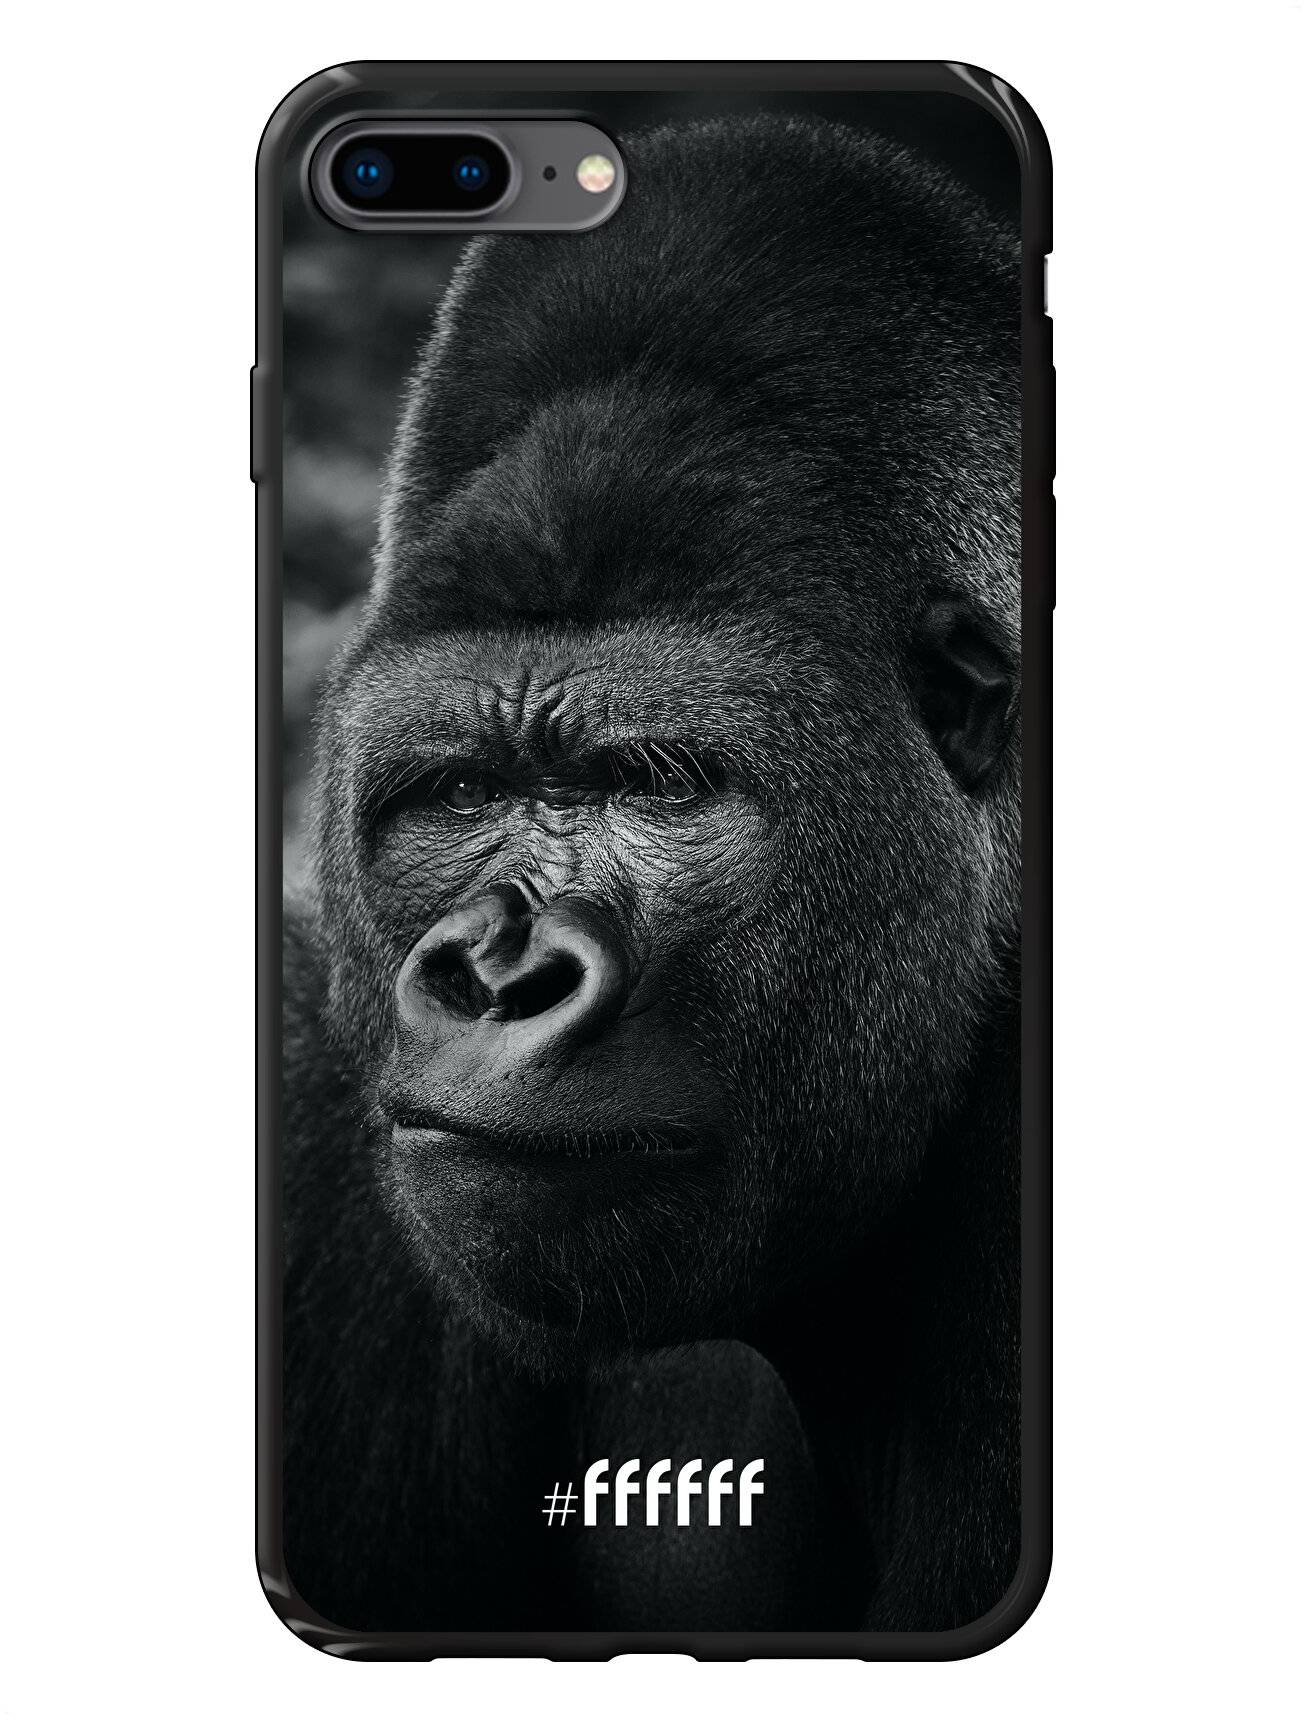 Gorilla iPhone 8 Plus